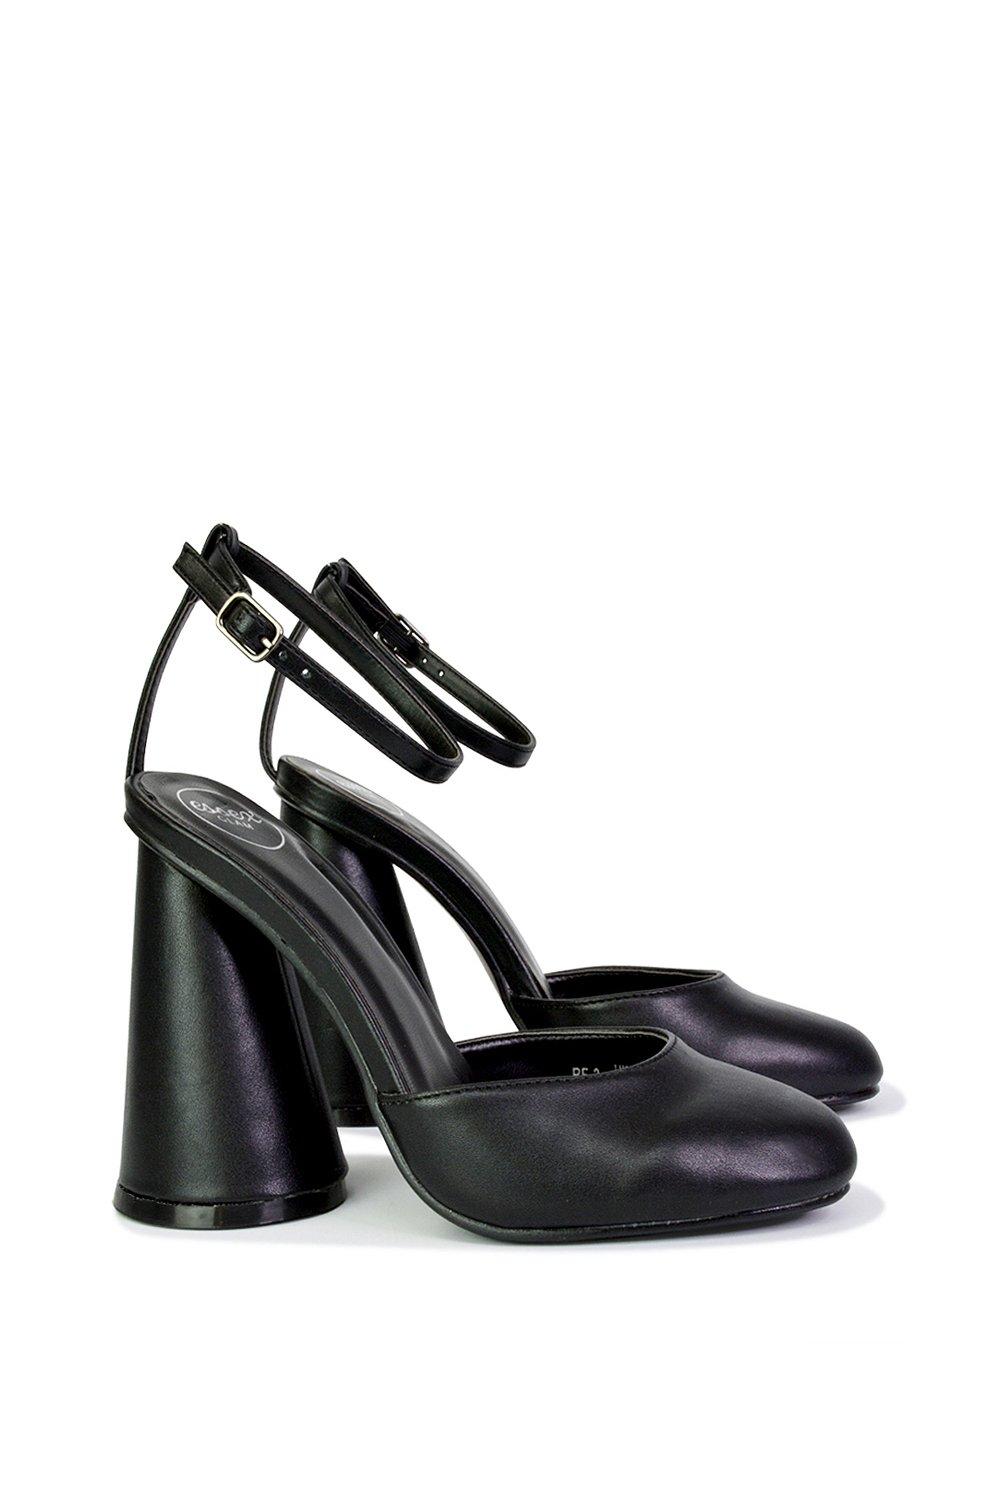 Эффектный каблук с блоком цилиндров и ремешком на щиколотке Ekin XY London, черный туфли женские кожаные на толстом каблуке с бисером на квадратном каблуке